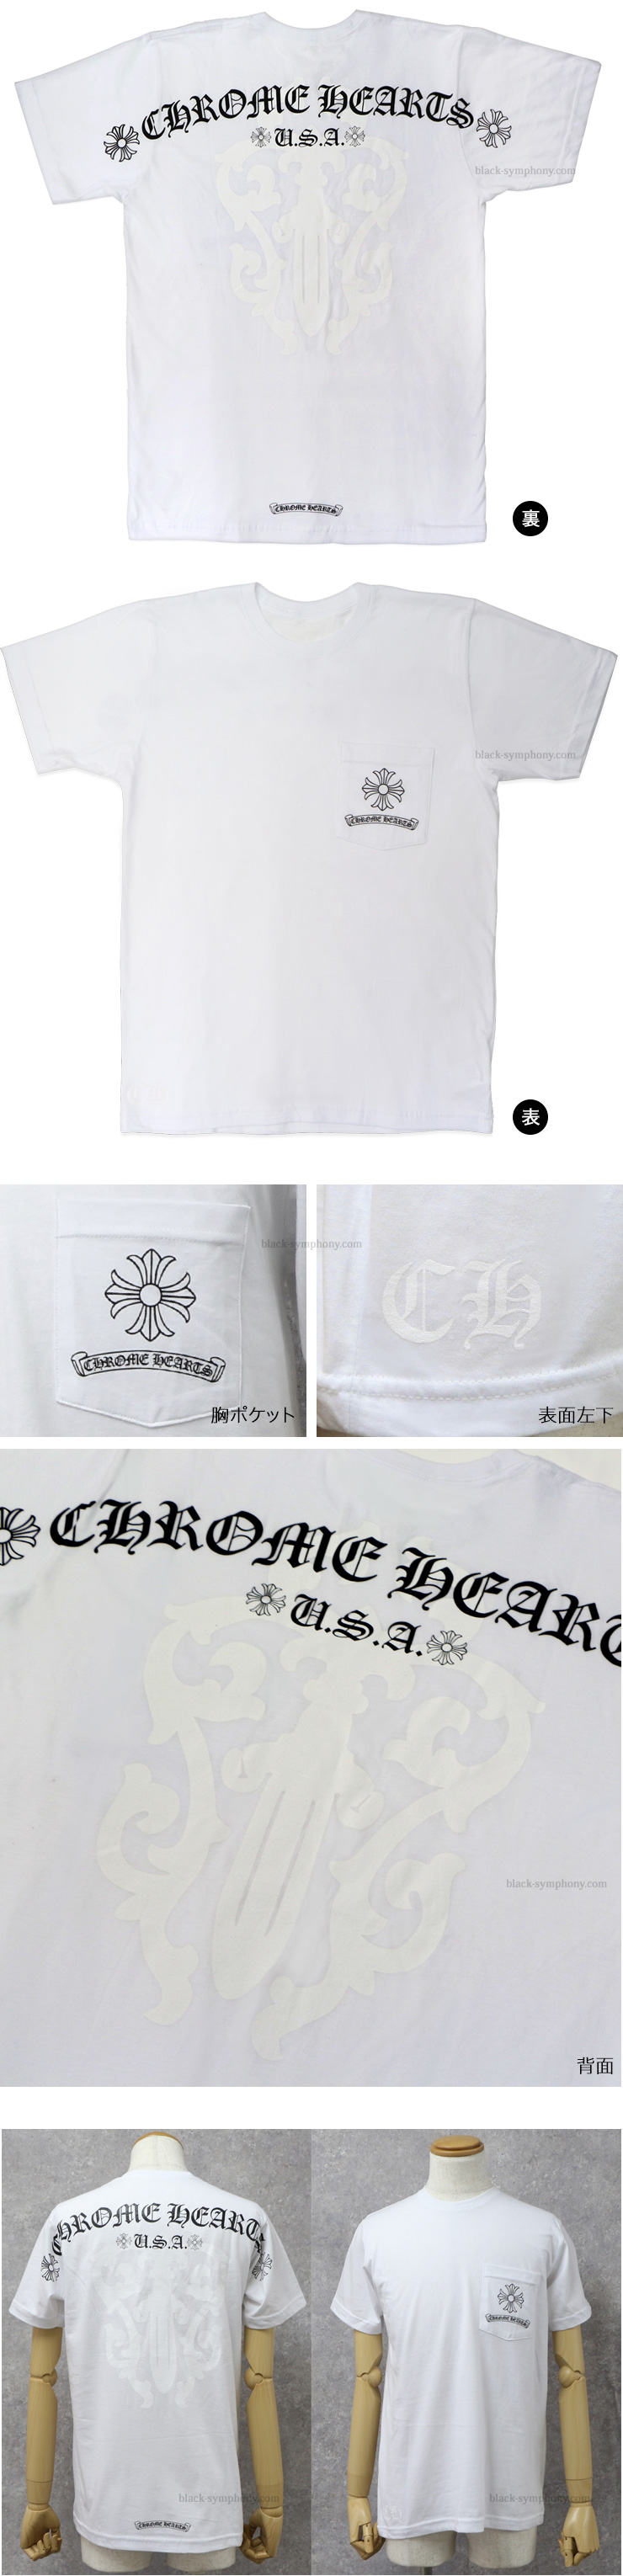 ChromeHearts クロムハーツ メンズハーフスリーブポケットTシャツ CHクロス/ヘアリーダガー ホワイト